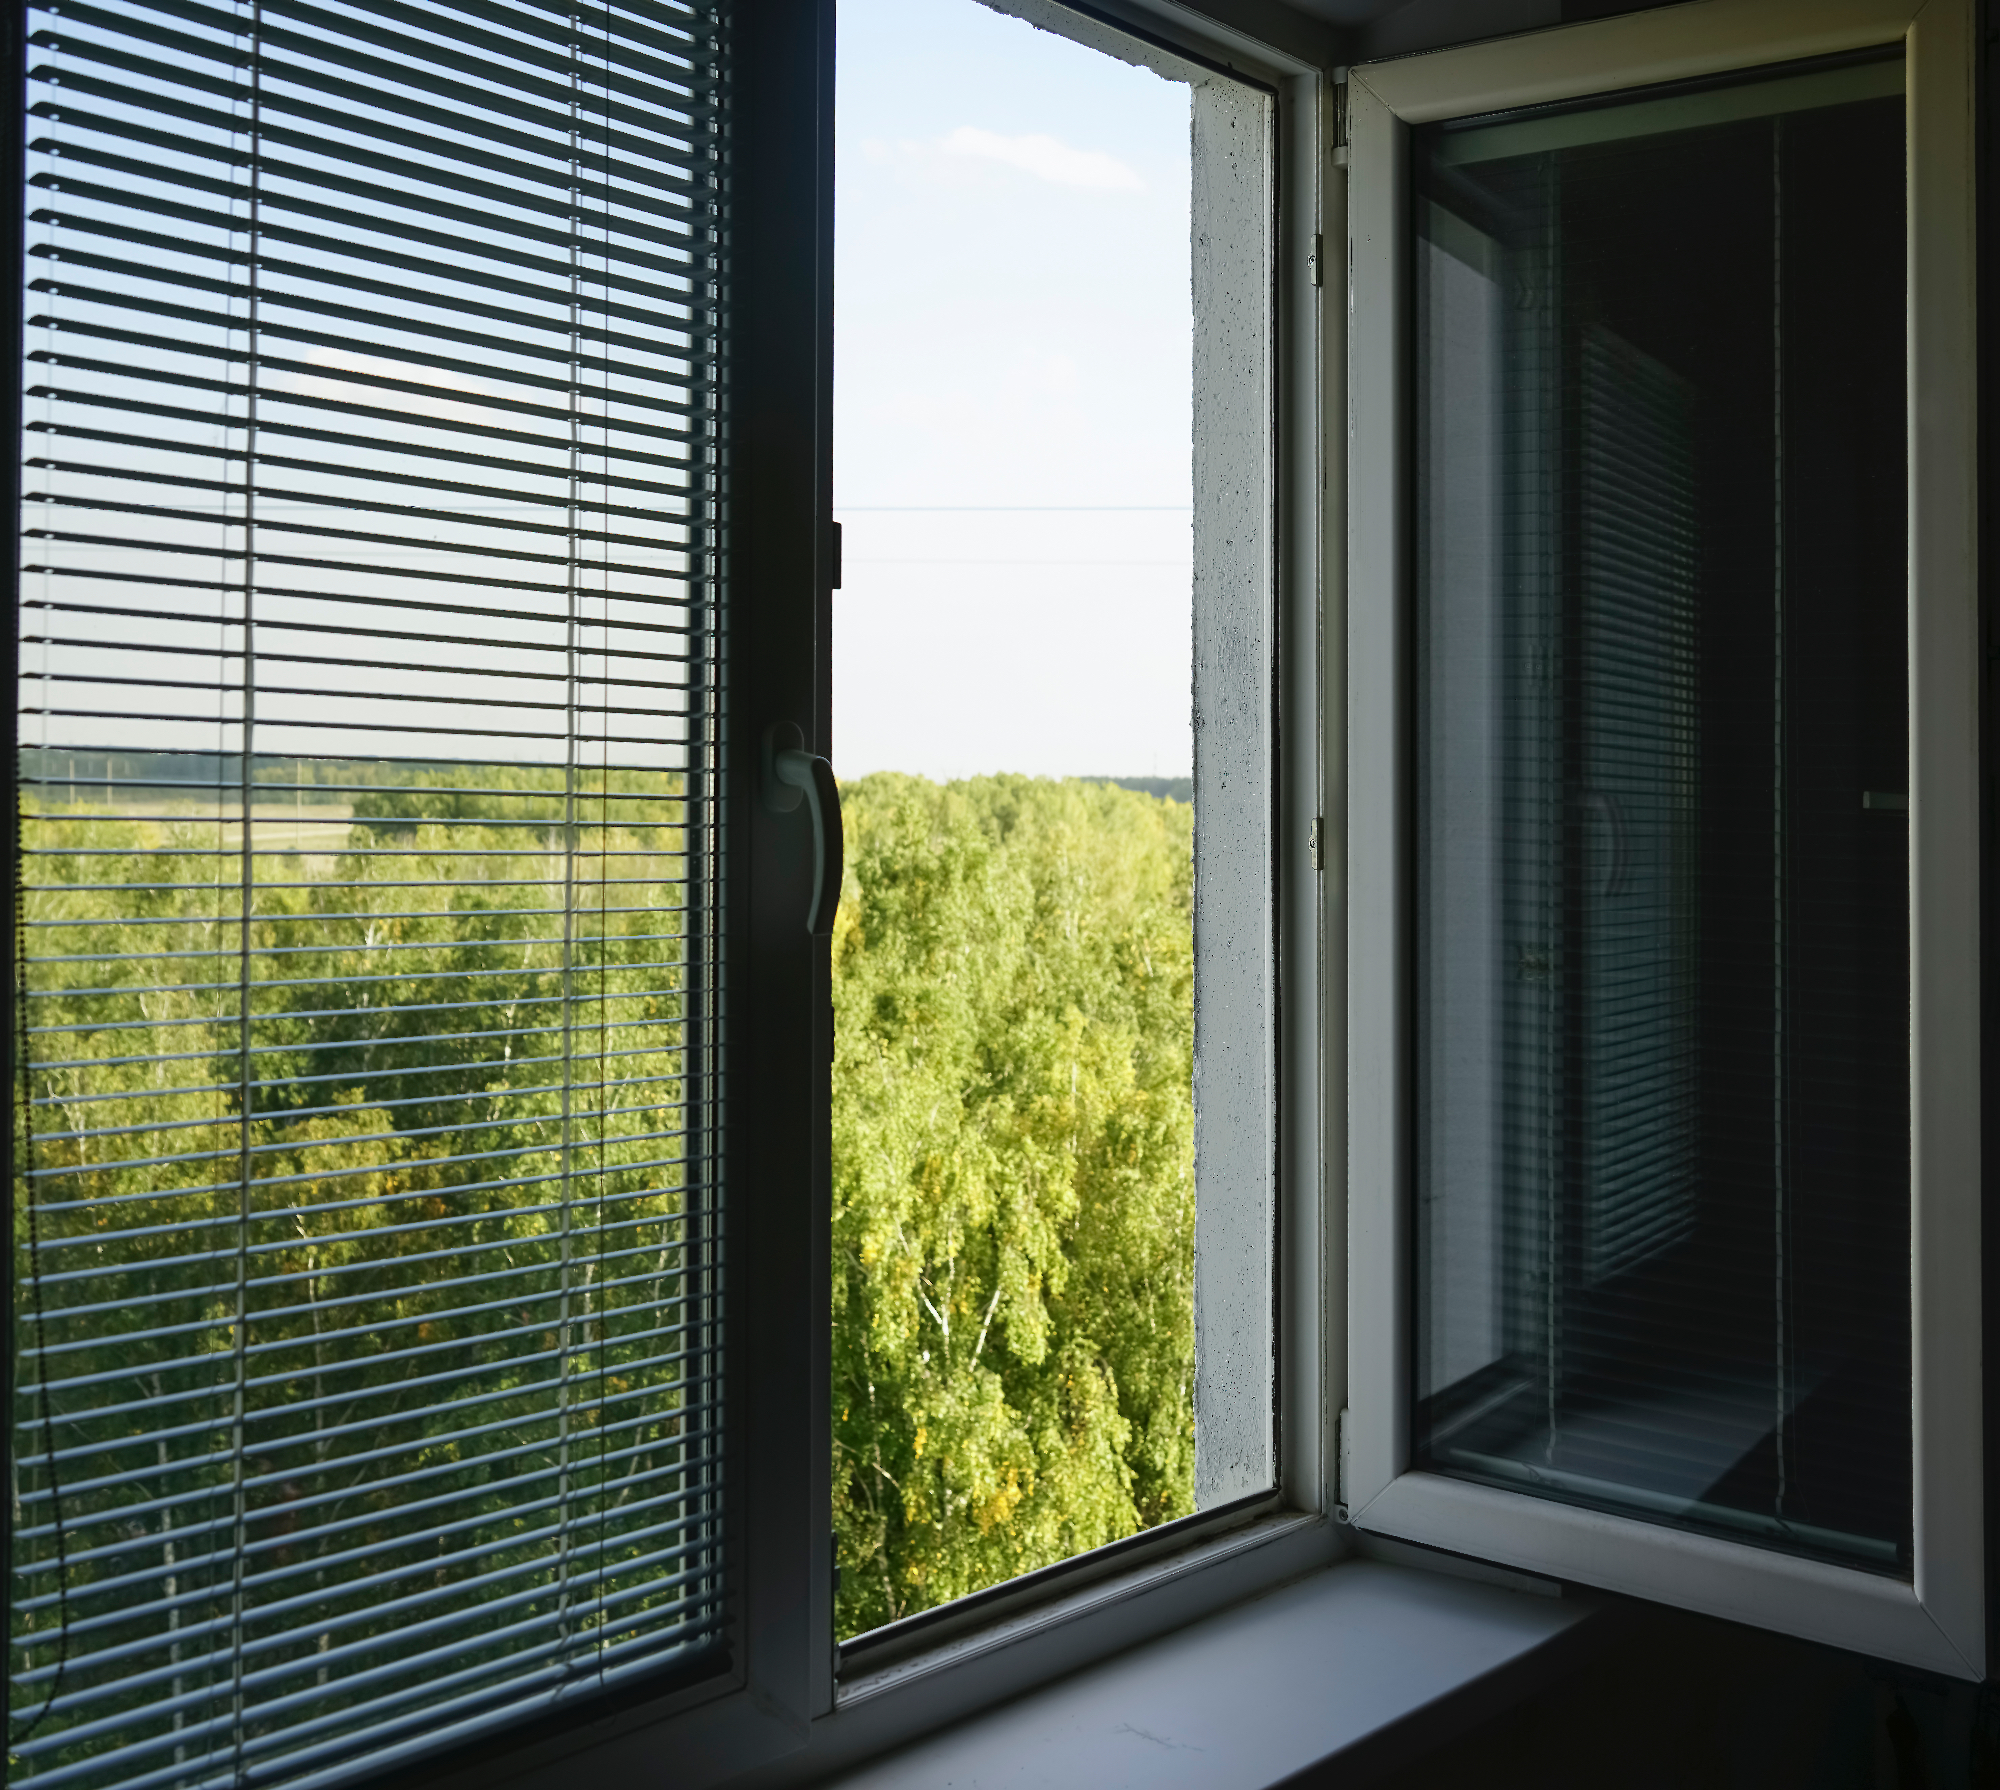 Notranje žaluzije so lahko zelo praktične za vsa okna